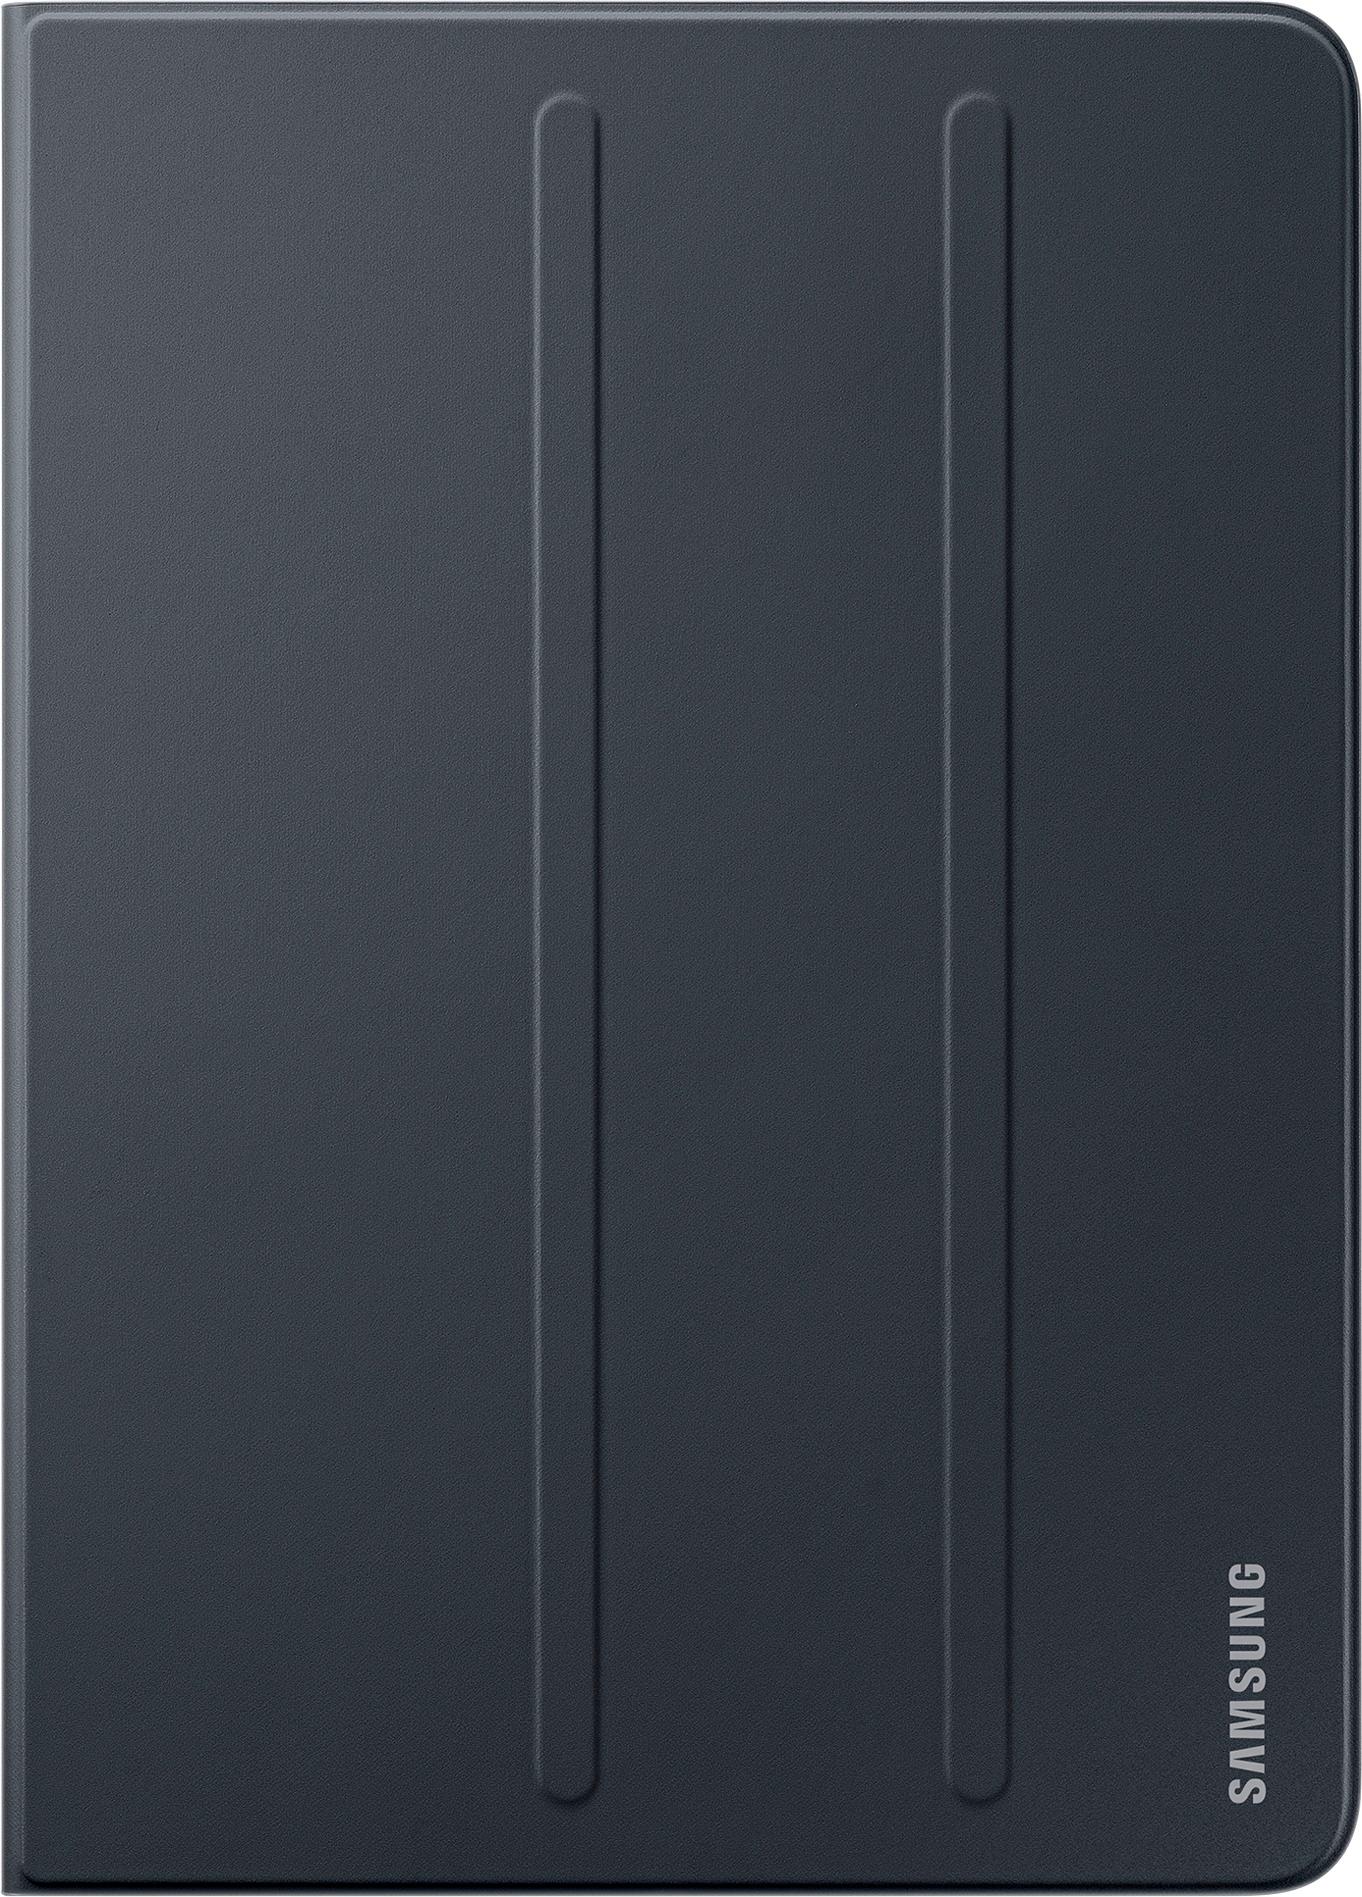 Best Samsung Folio Case Galaxy Tab S3 9.7" Black EF-BT820PBEGUJ